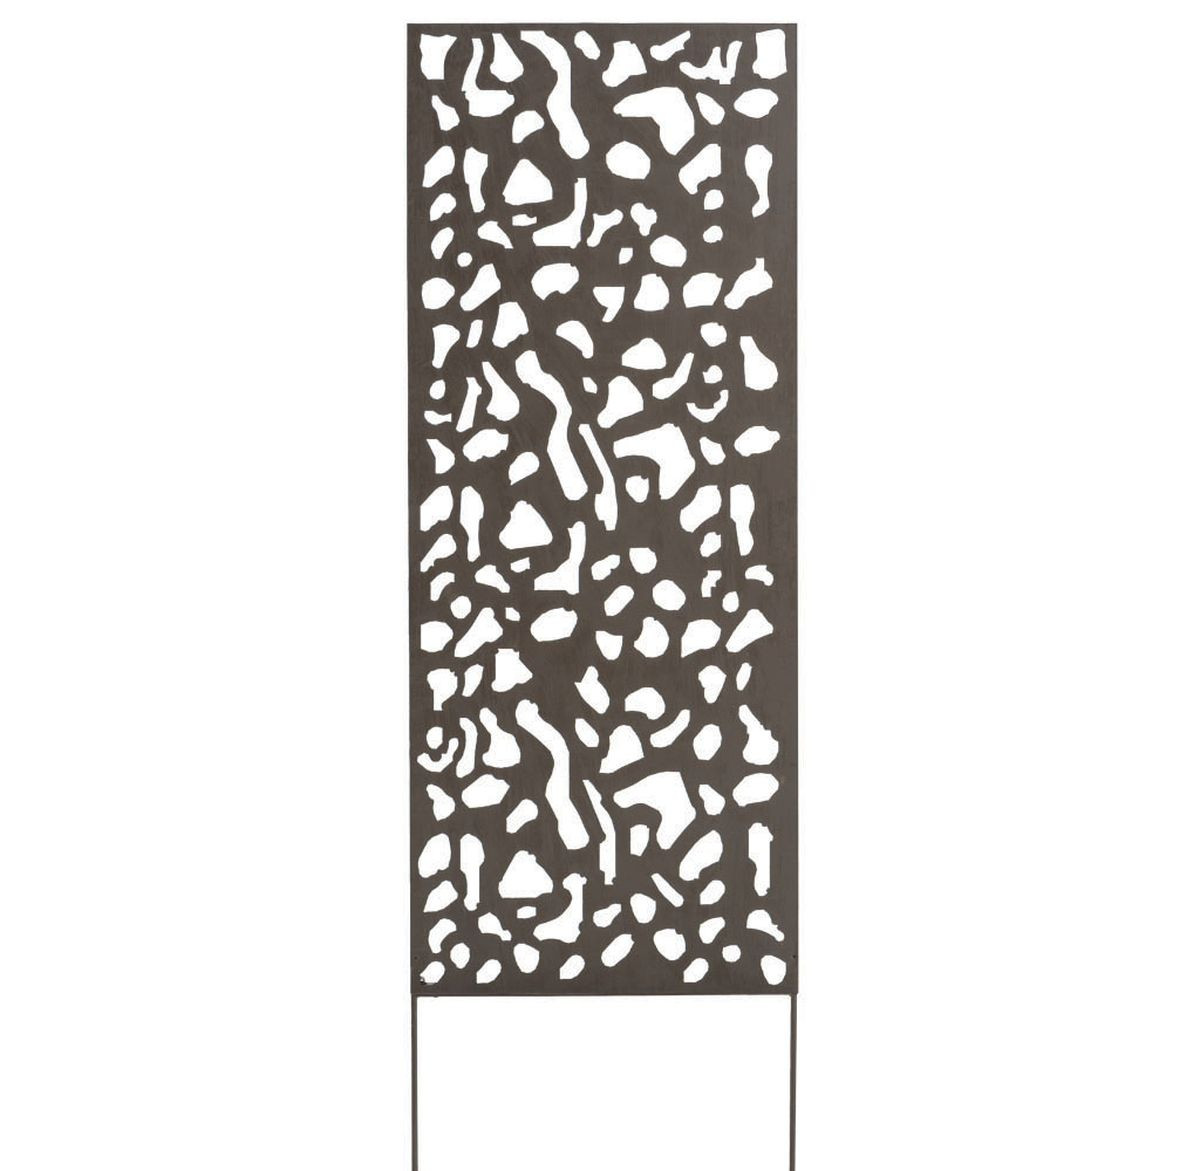 Panneau métal avec motifs décoratifs/Tâches - 0,60 x 1,50 m - Brun vieilli